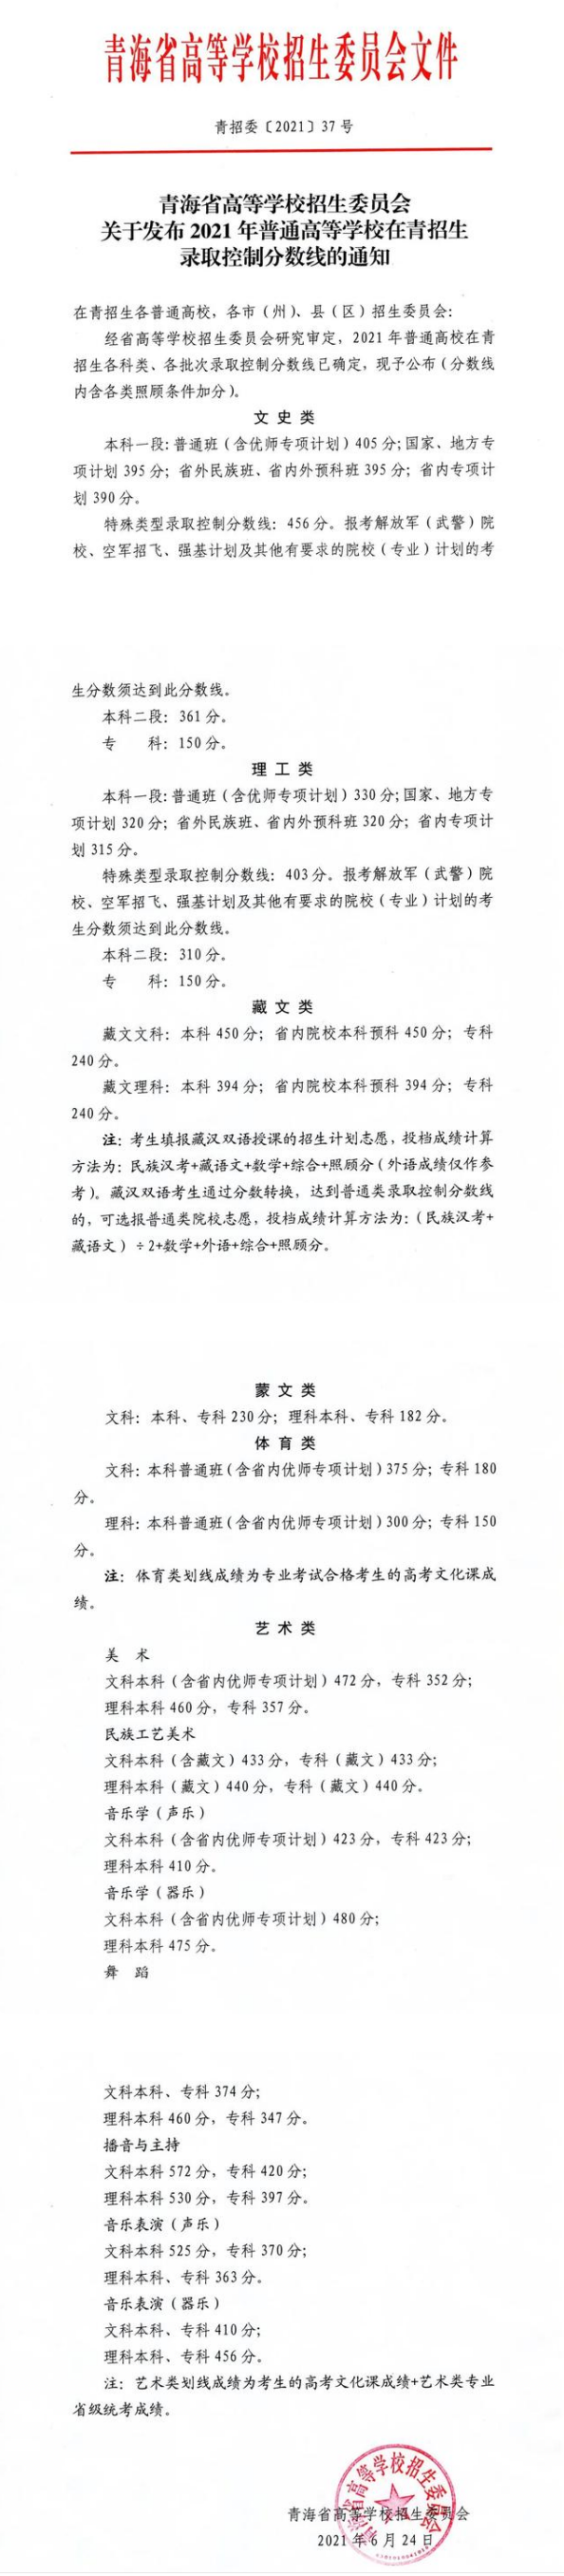 2022青海省高考分数线公布